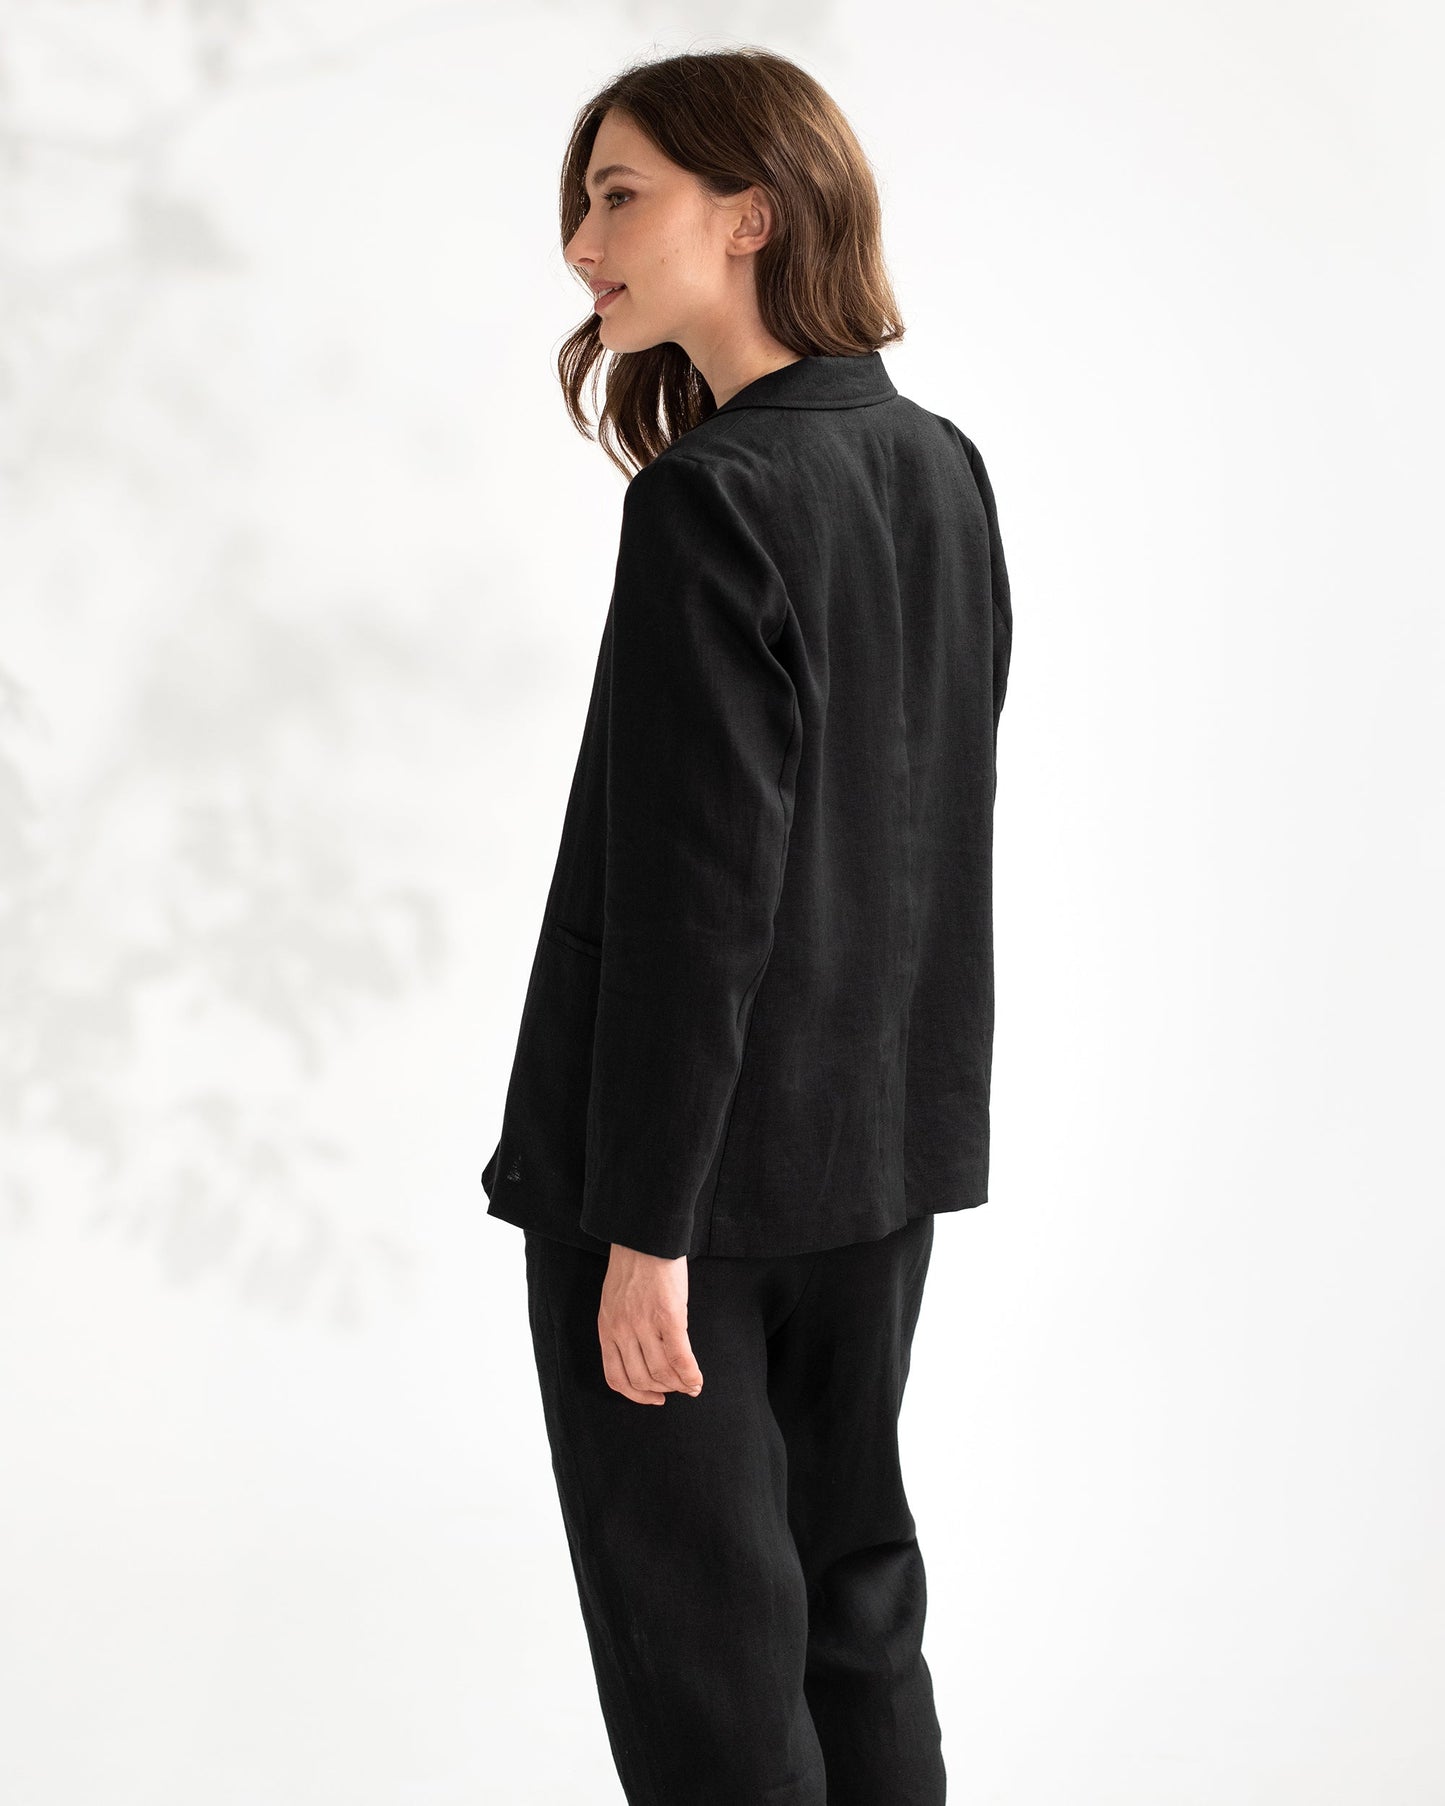 Women's linen blazer PLACID in black - MagicLinen